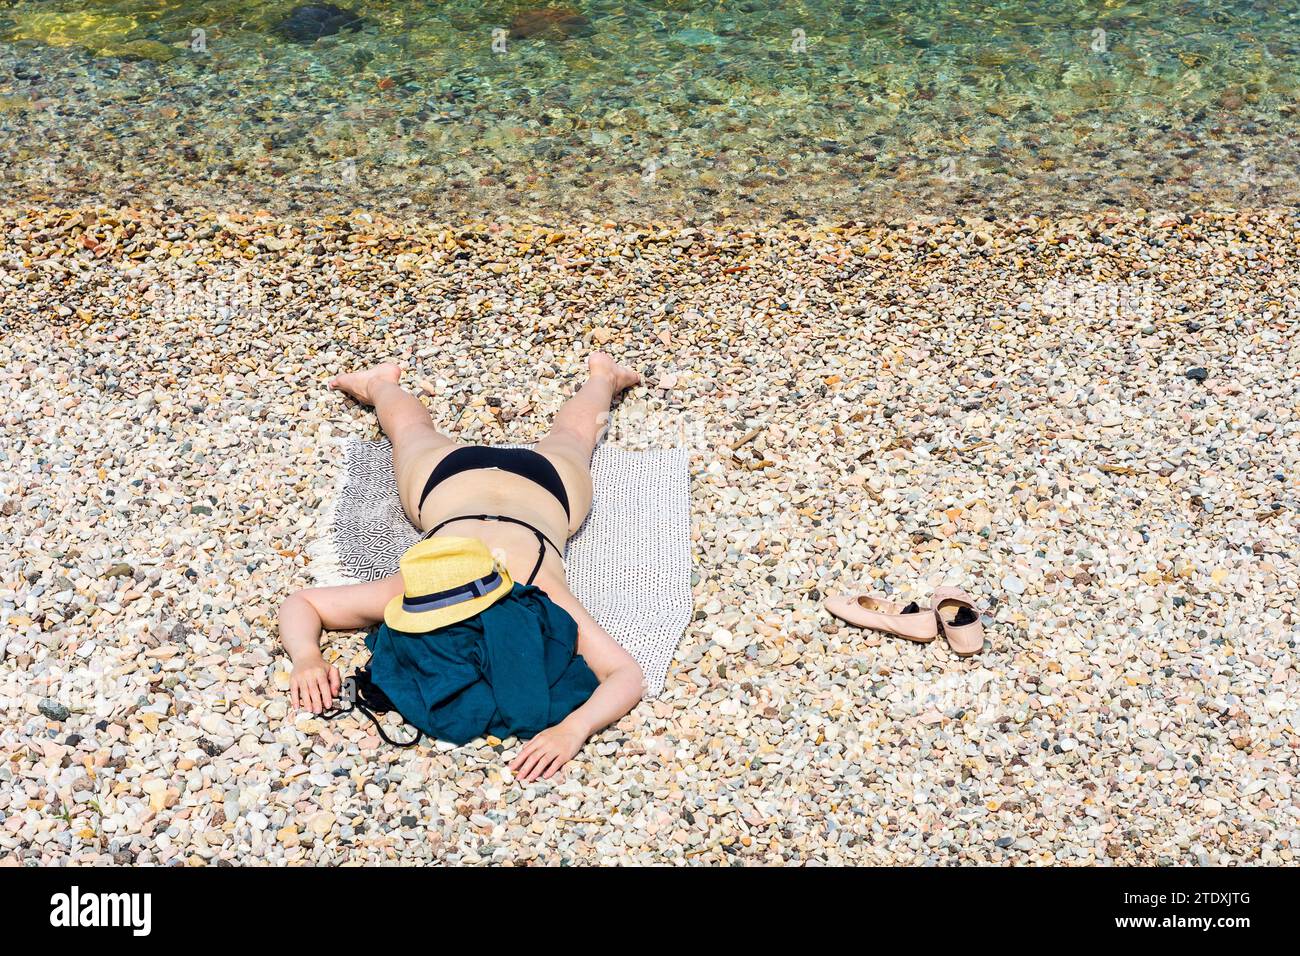 Torri del Benaco: Donna sdraiata a faccia in giù sulla spiaggia, cappello da sole, bikini, Lago di Garda a Verona, Veneto, Italia Foto Stock